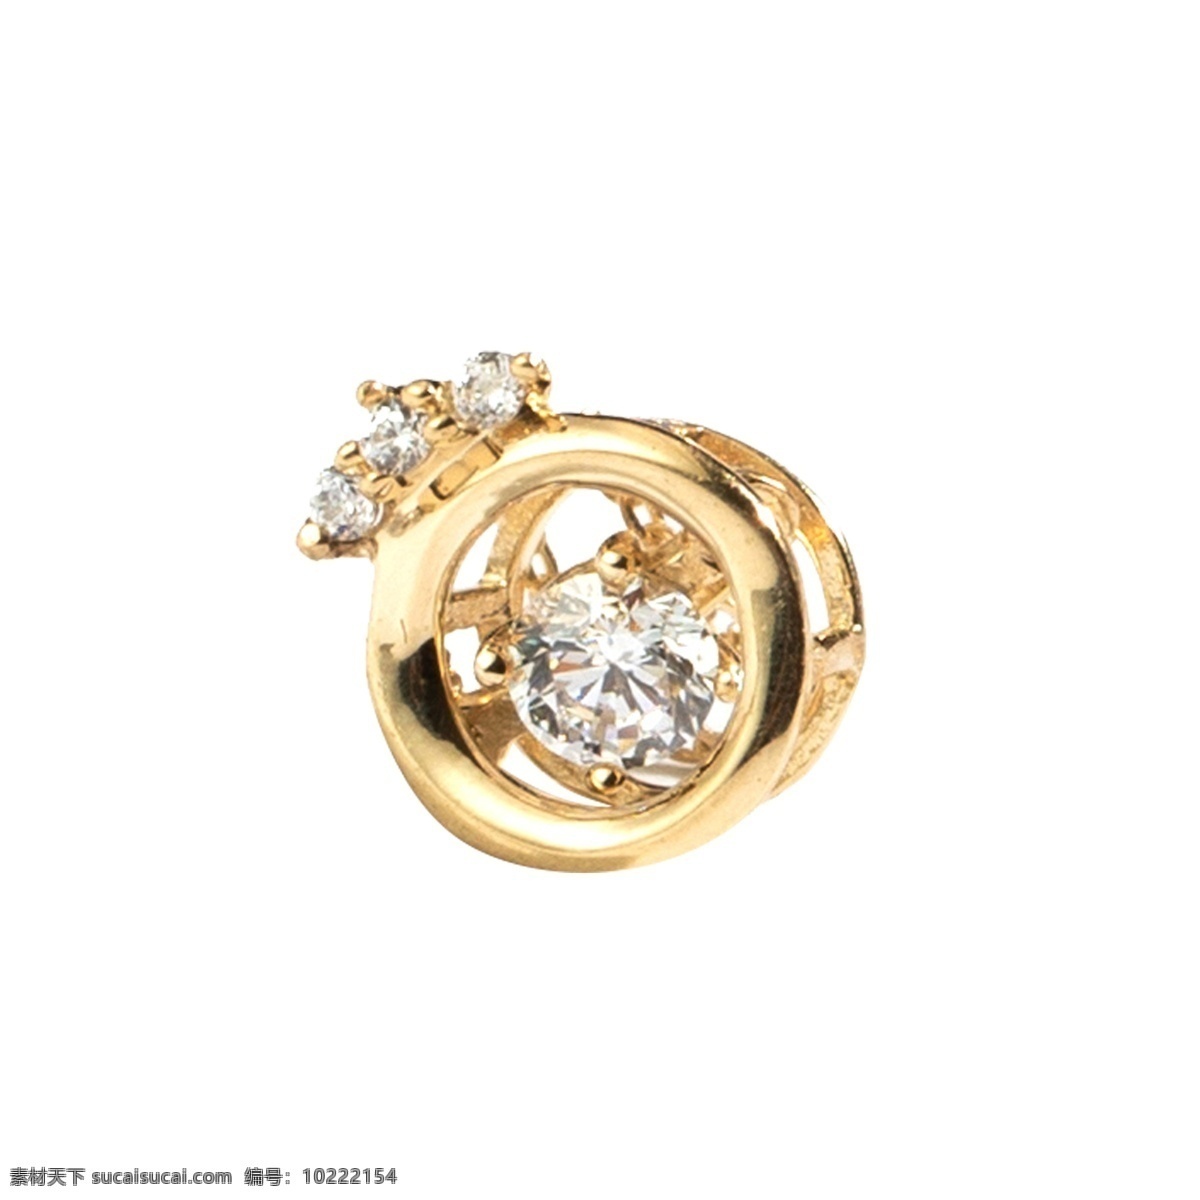 金色 钻石 首饰 元素 创意 纹理 光泽 质感 宝石 晶莹剔透 闪光 圆环 珍贵 贵重